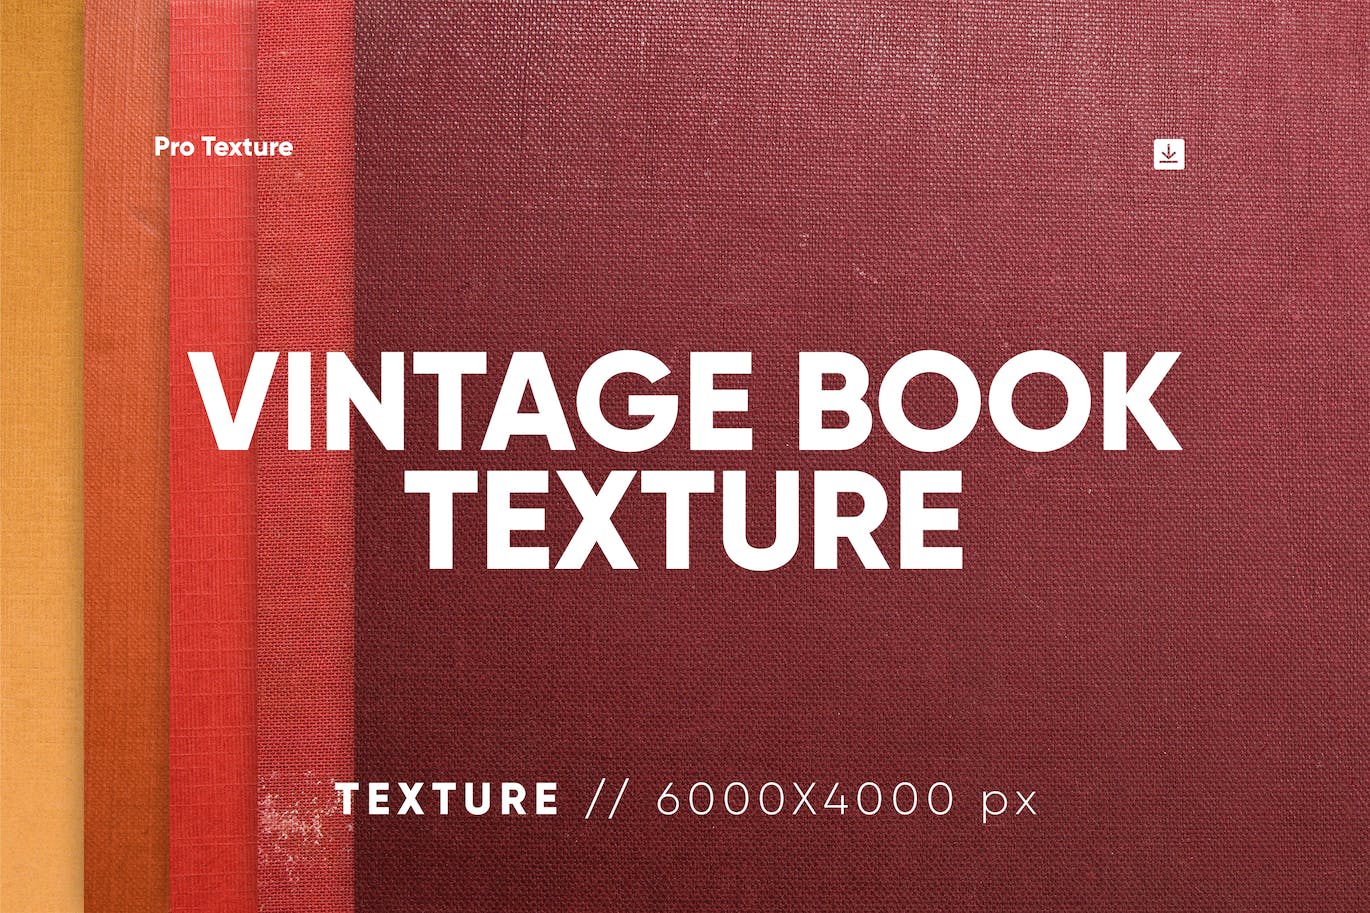 20个复古书皮纹理背景素材 20 Vintage Book Cover Textures 图片素材 第1张